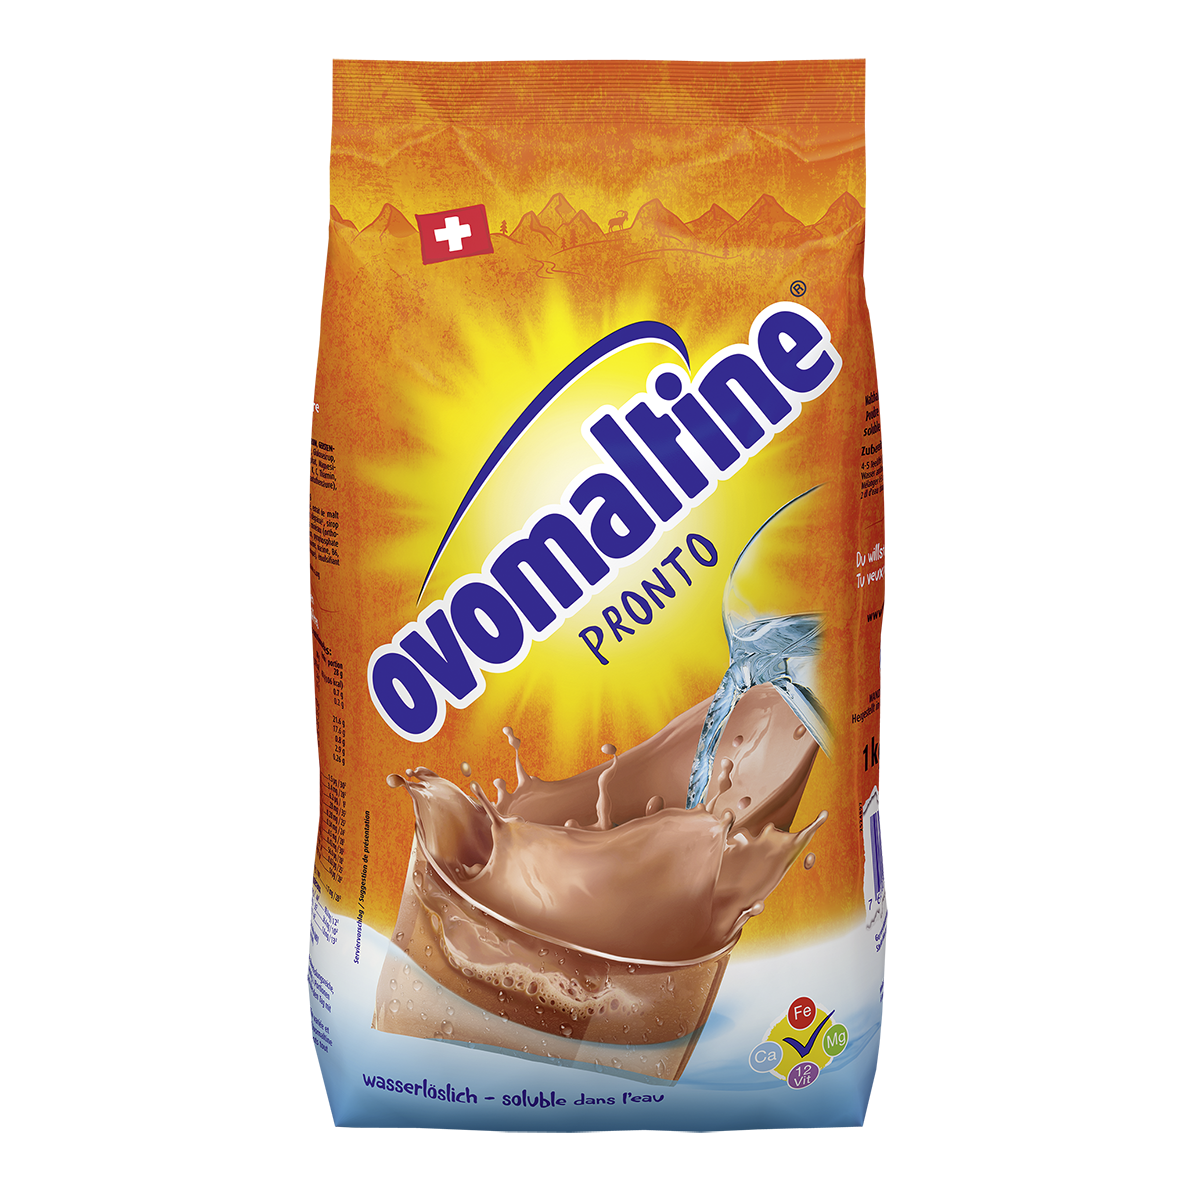  Ovomaltine Pronto - Ovo Kakaopulver für Wasser